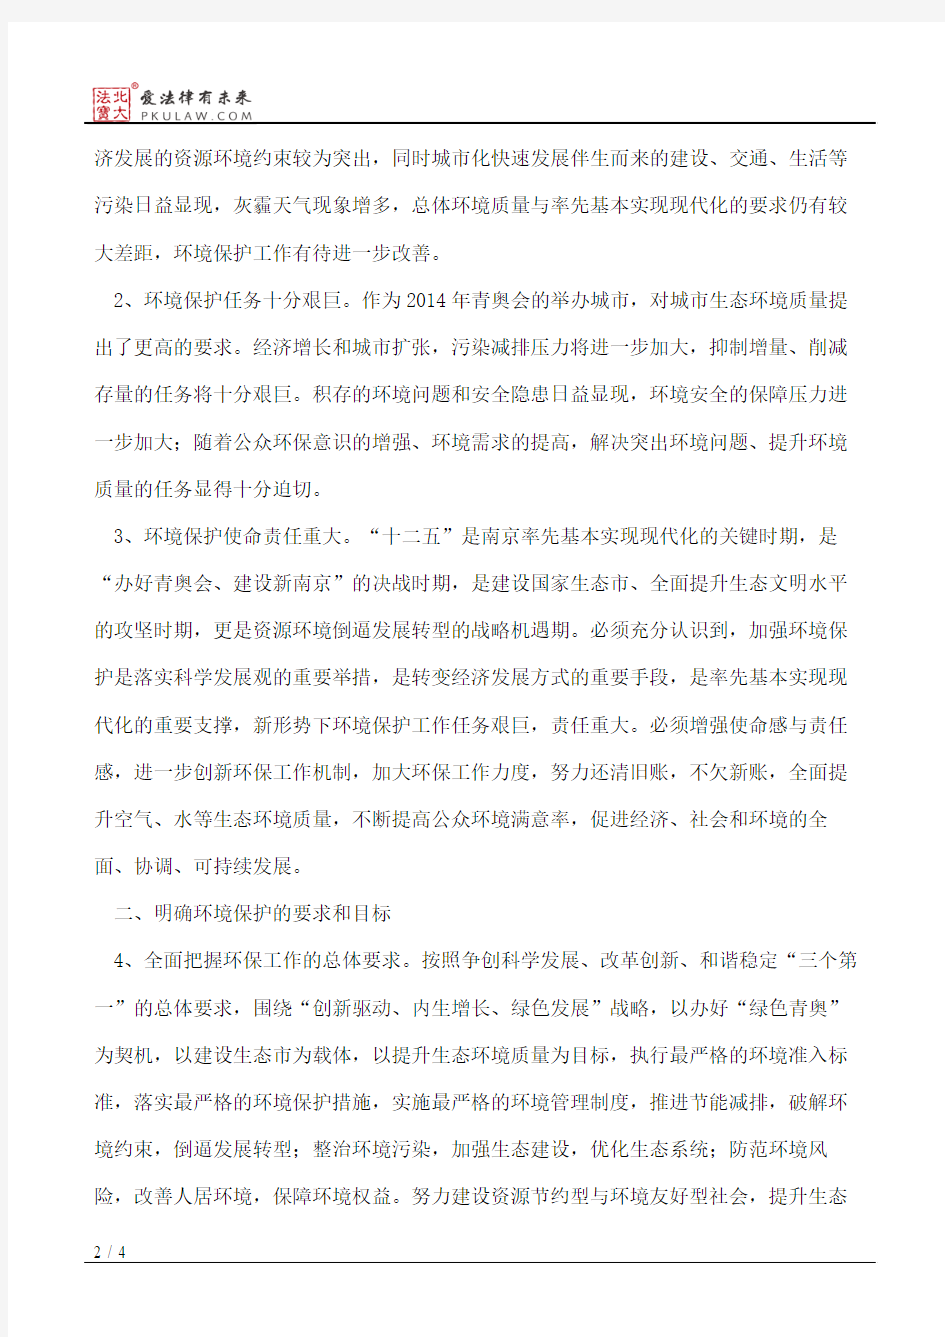 中共南京市委、南京市人民政府关于进一步深化环境保护工作的决定